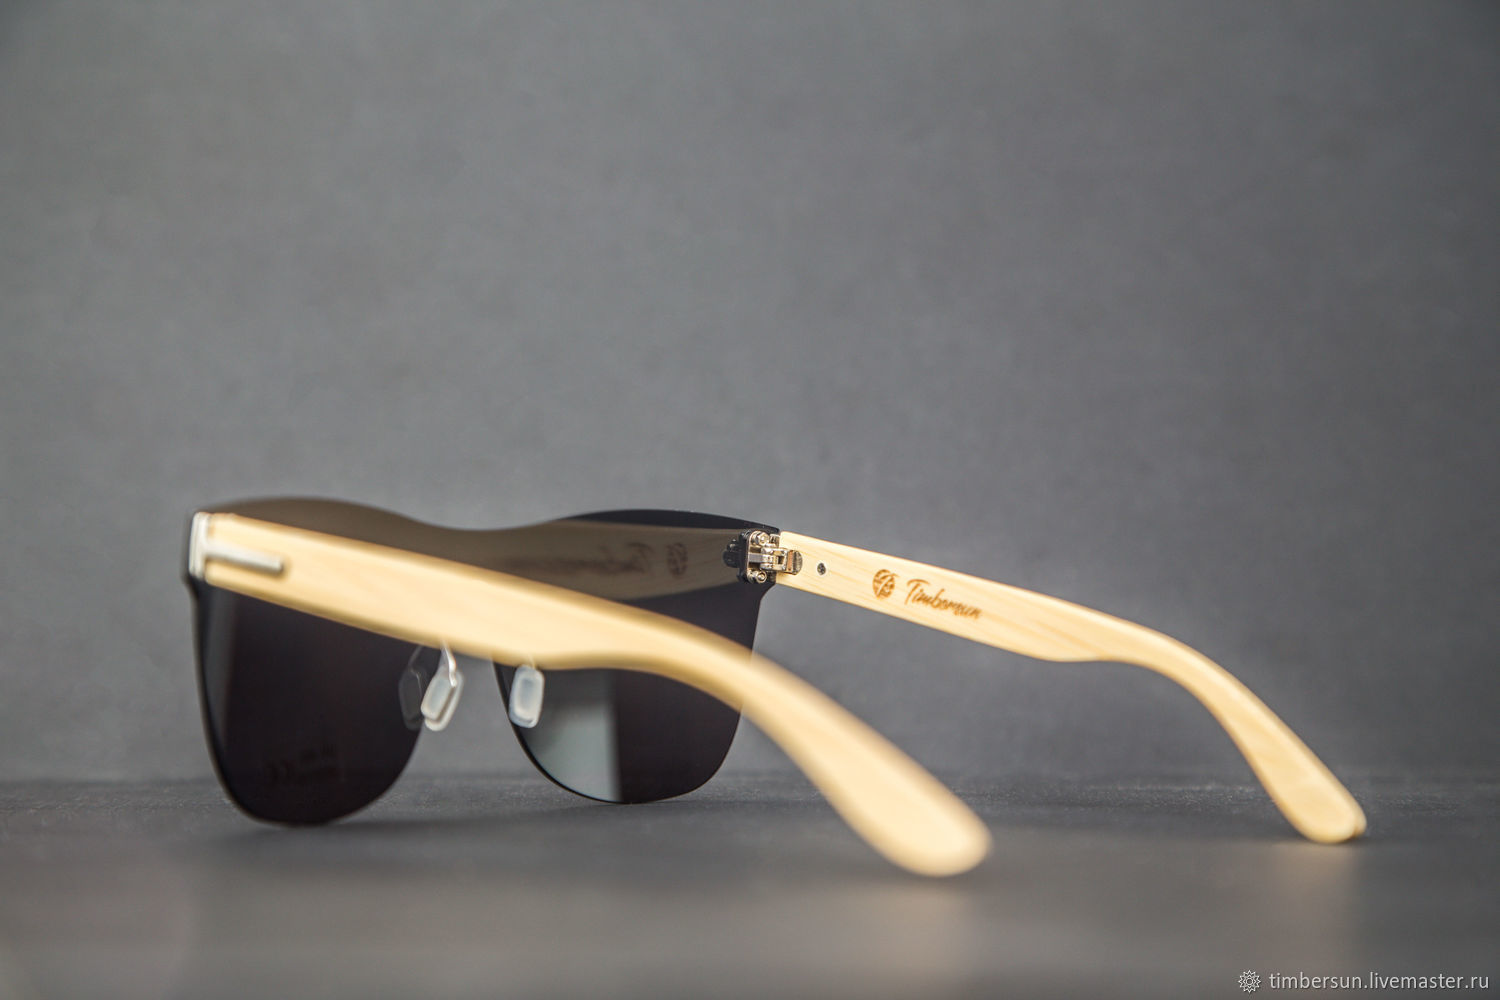 Солнцезащитные очки "Shield Grey" с деревянными дужками.